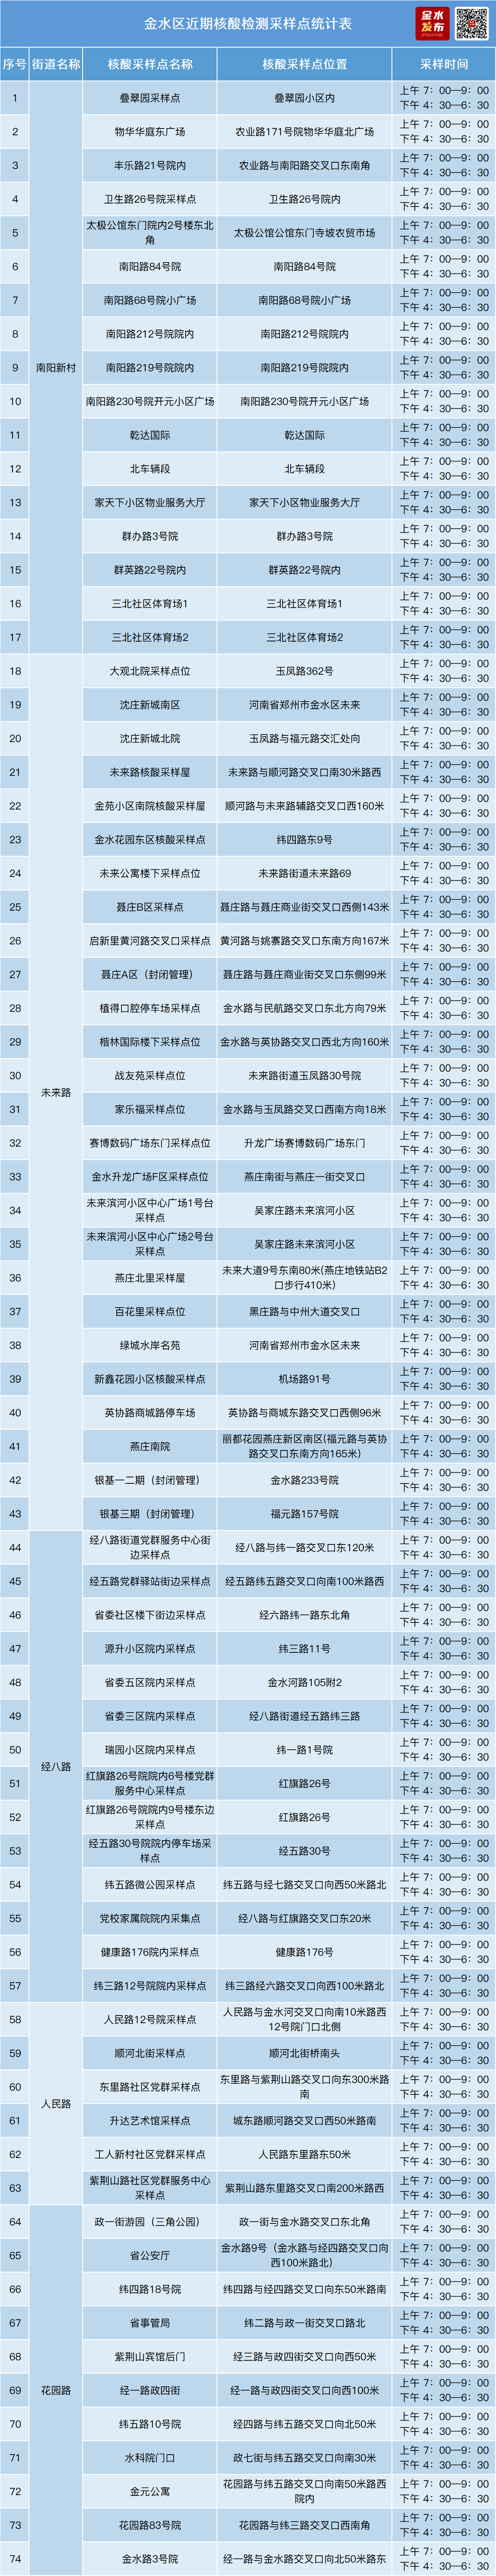 郑州市金水区公布核酸采样点位(内附采样时间)